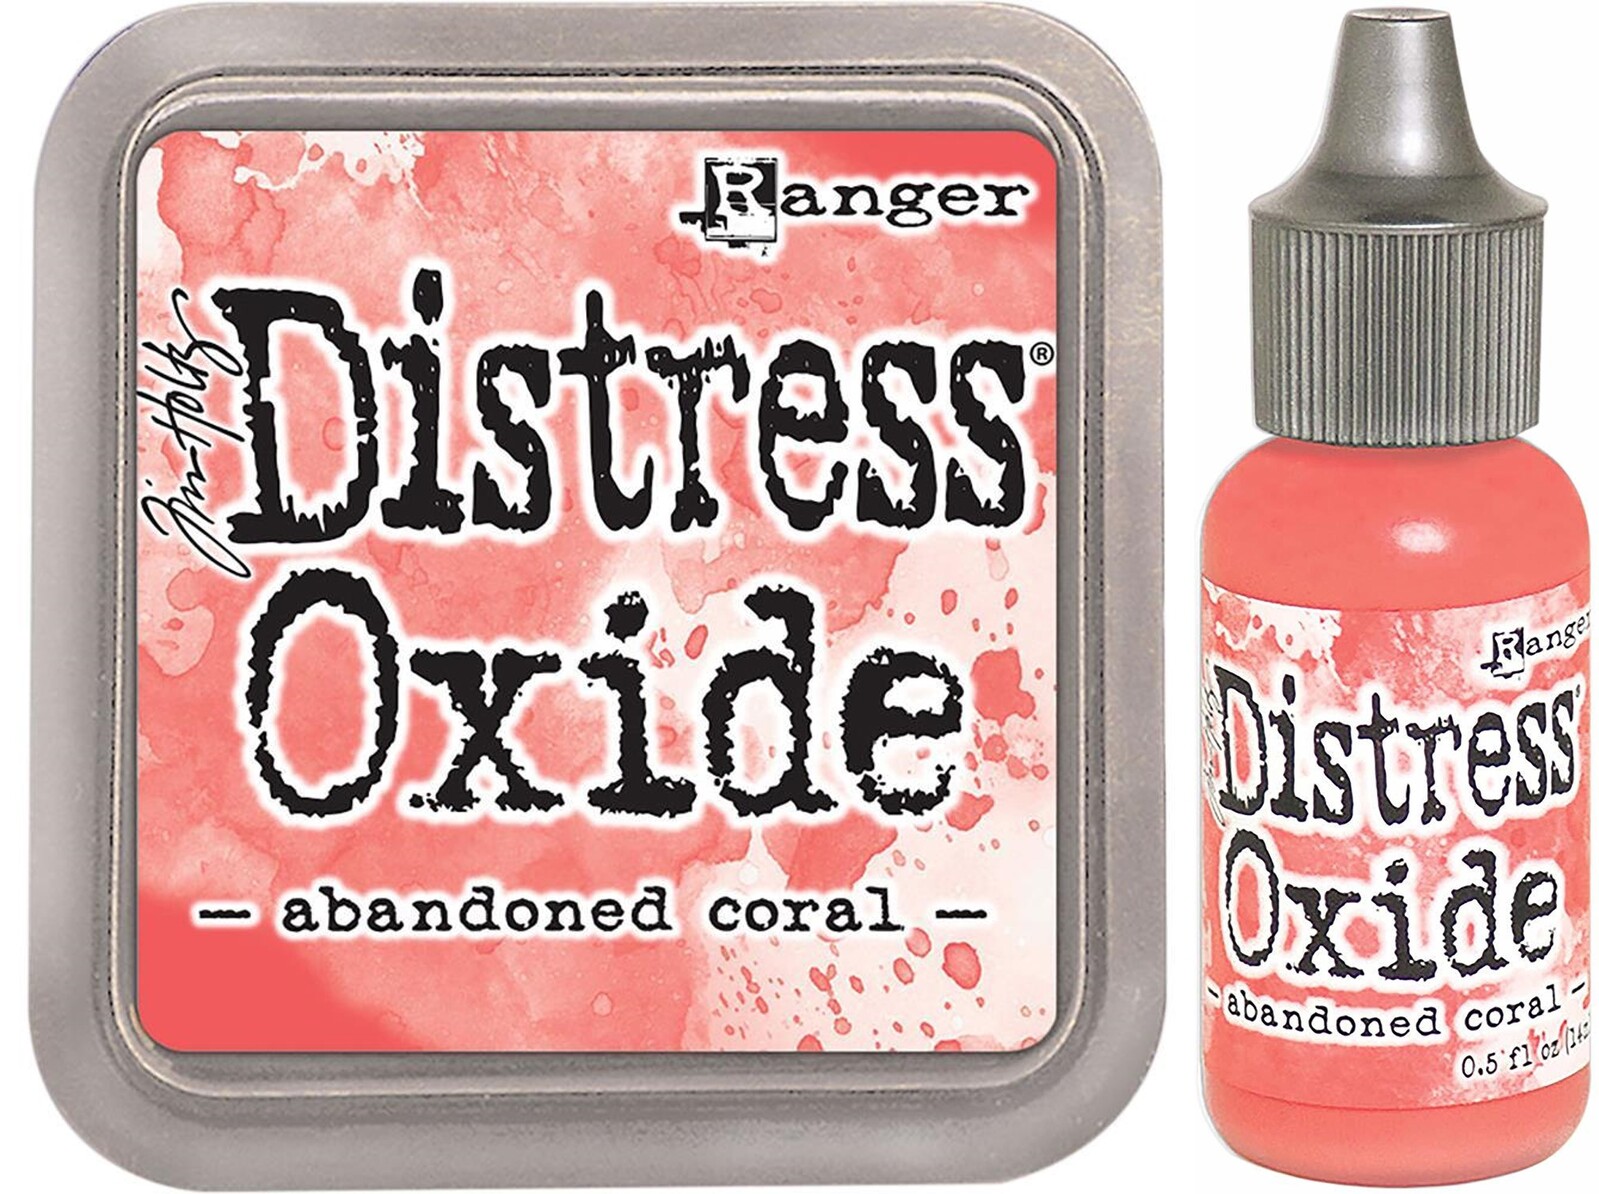 Tim Holtz Distress Oxide Ink Pad + Reinker Abandoned Coral